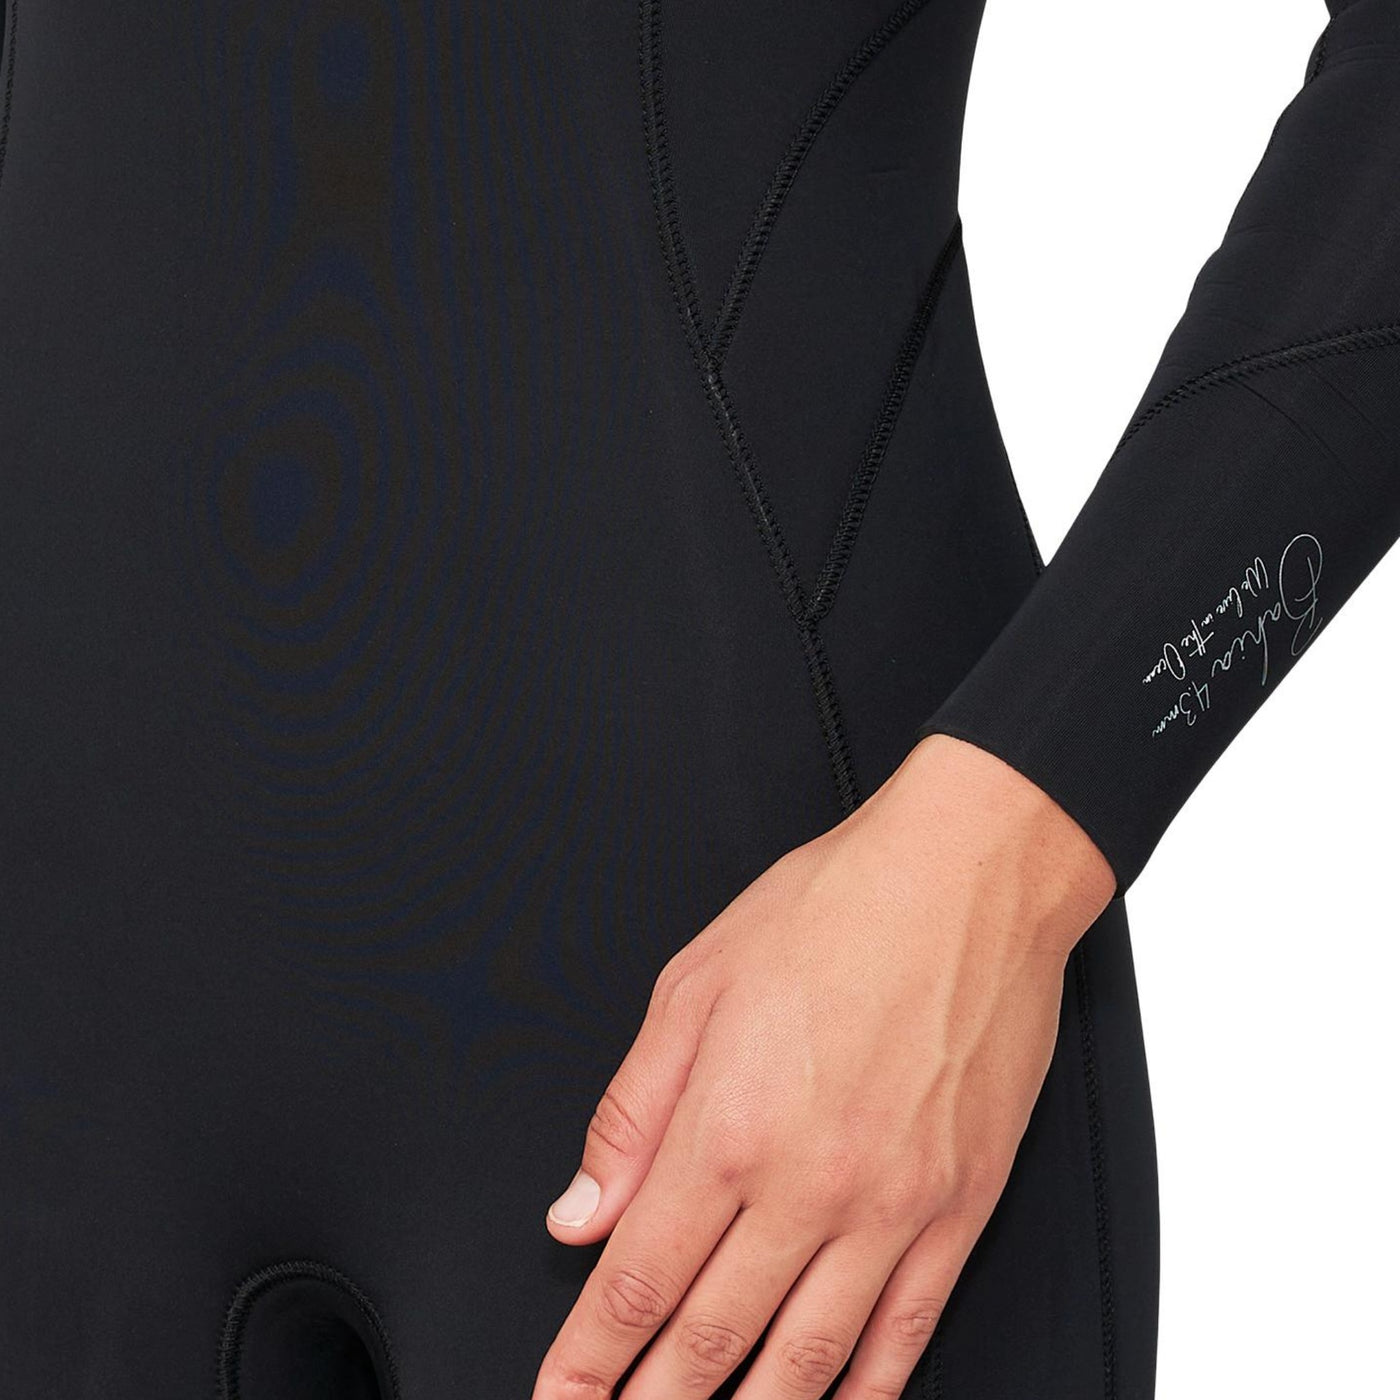 O'Neill Women's Bahia 4/3mm Steamer Wetsuit - Back Zip